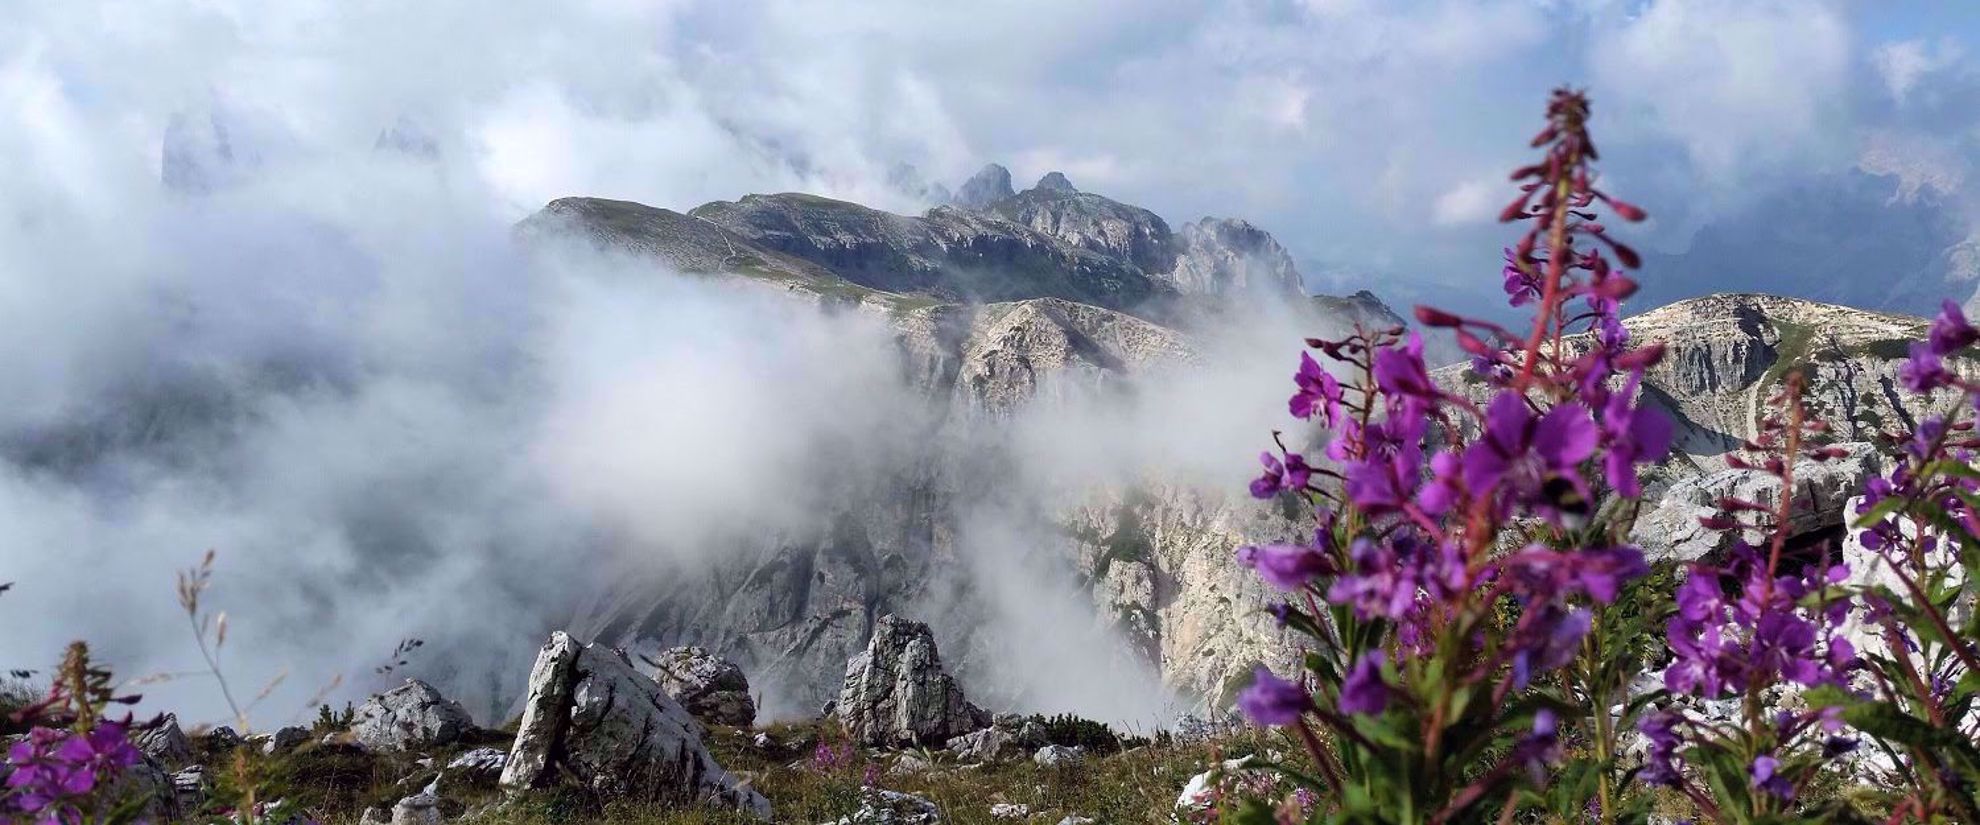 purple wildflowers in italian alps on foggy day